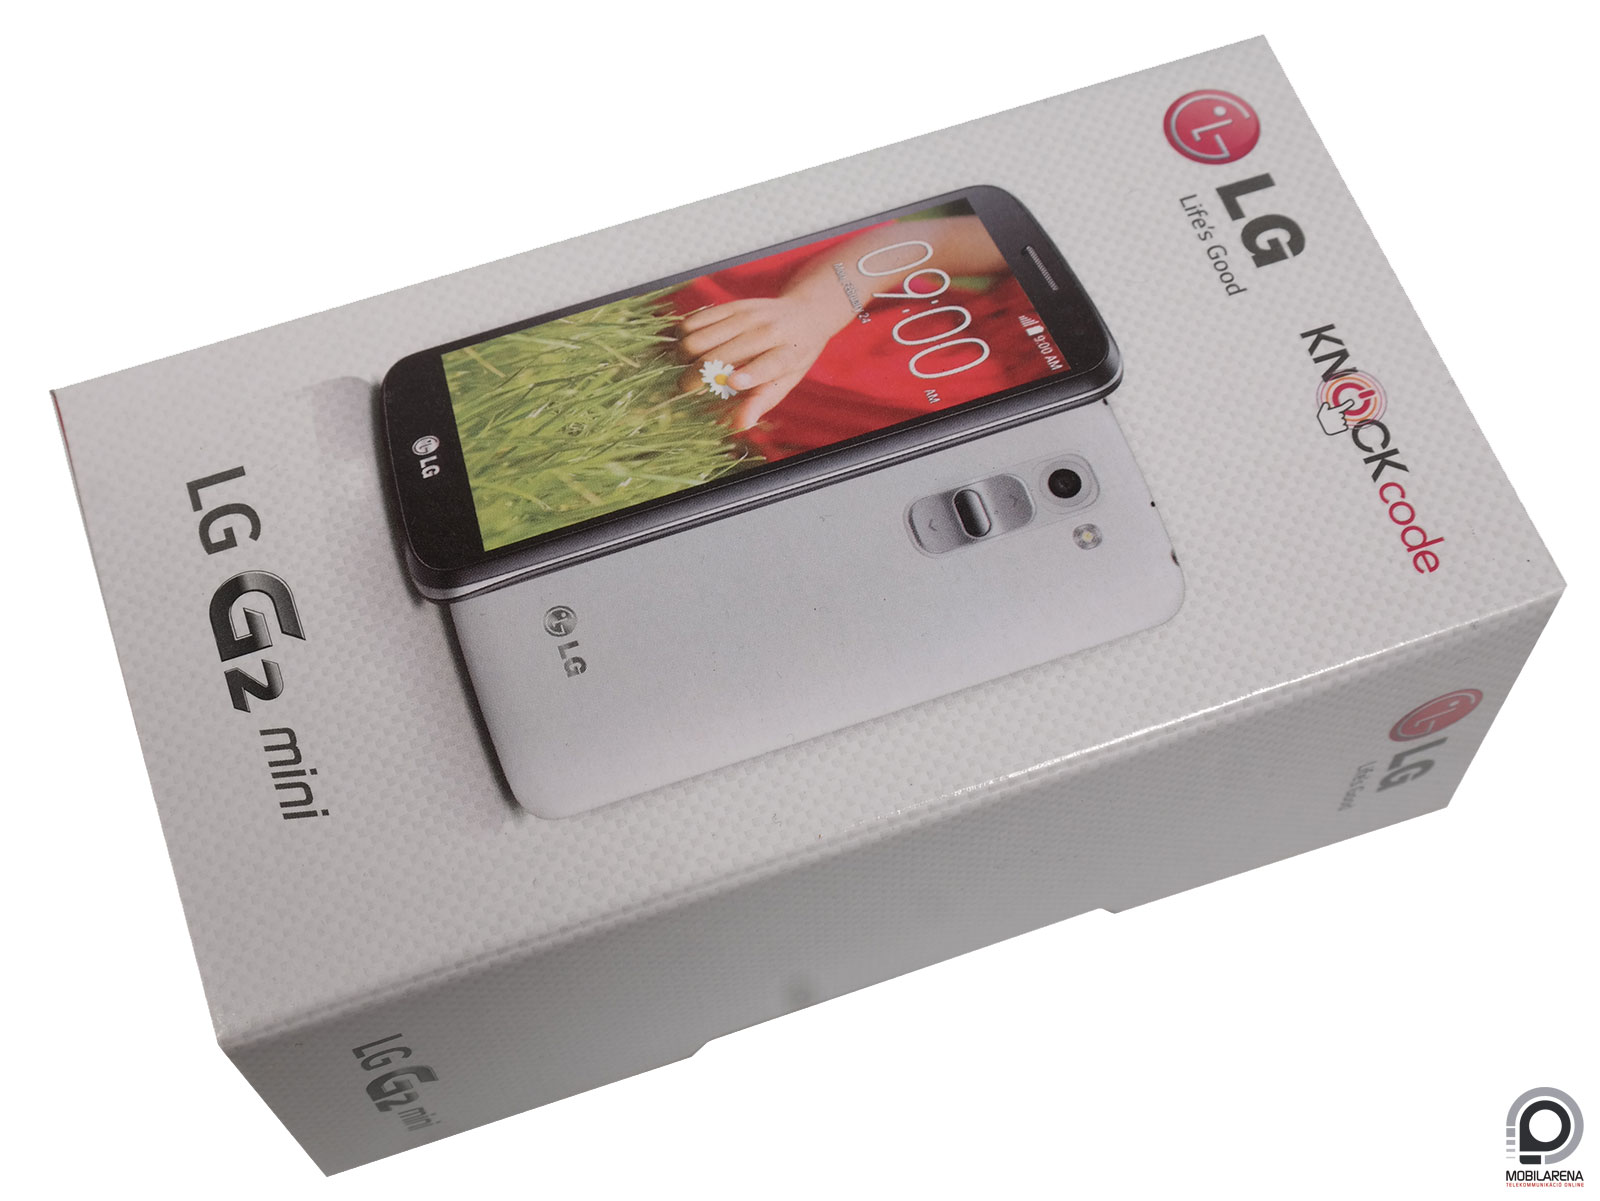 LG G2 mini - testvére a példaképe - Mobilarena Okostelefon teszt